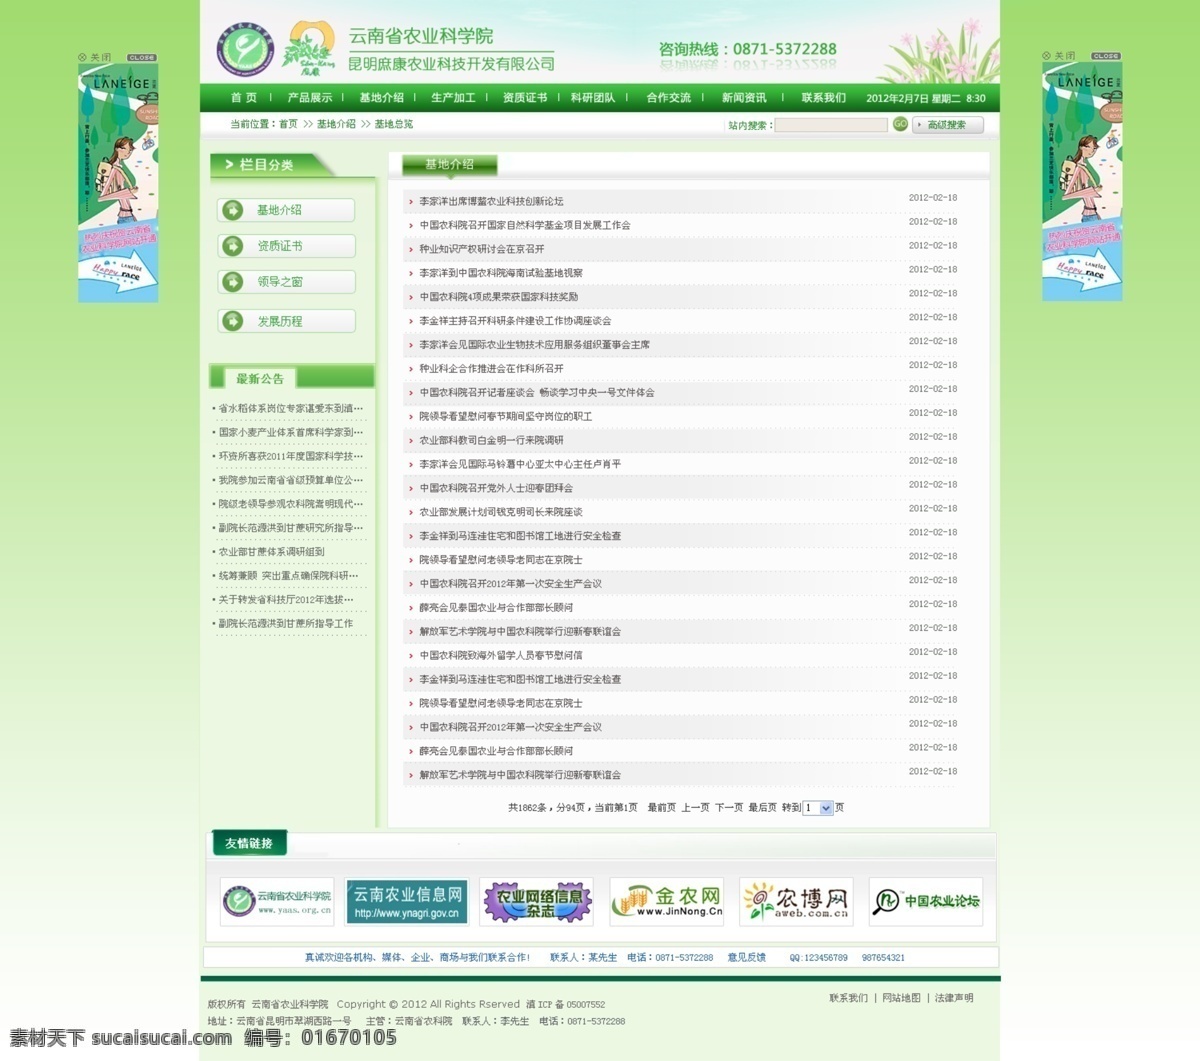 网站 模板 内页 网站模板 网站首页 网站设计 网页模板 绿色 内页设计 内页模板 新闻中心 网页设计 中文模版 源文件